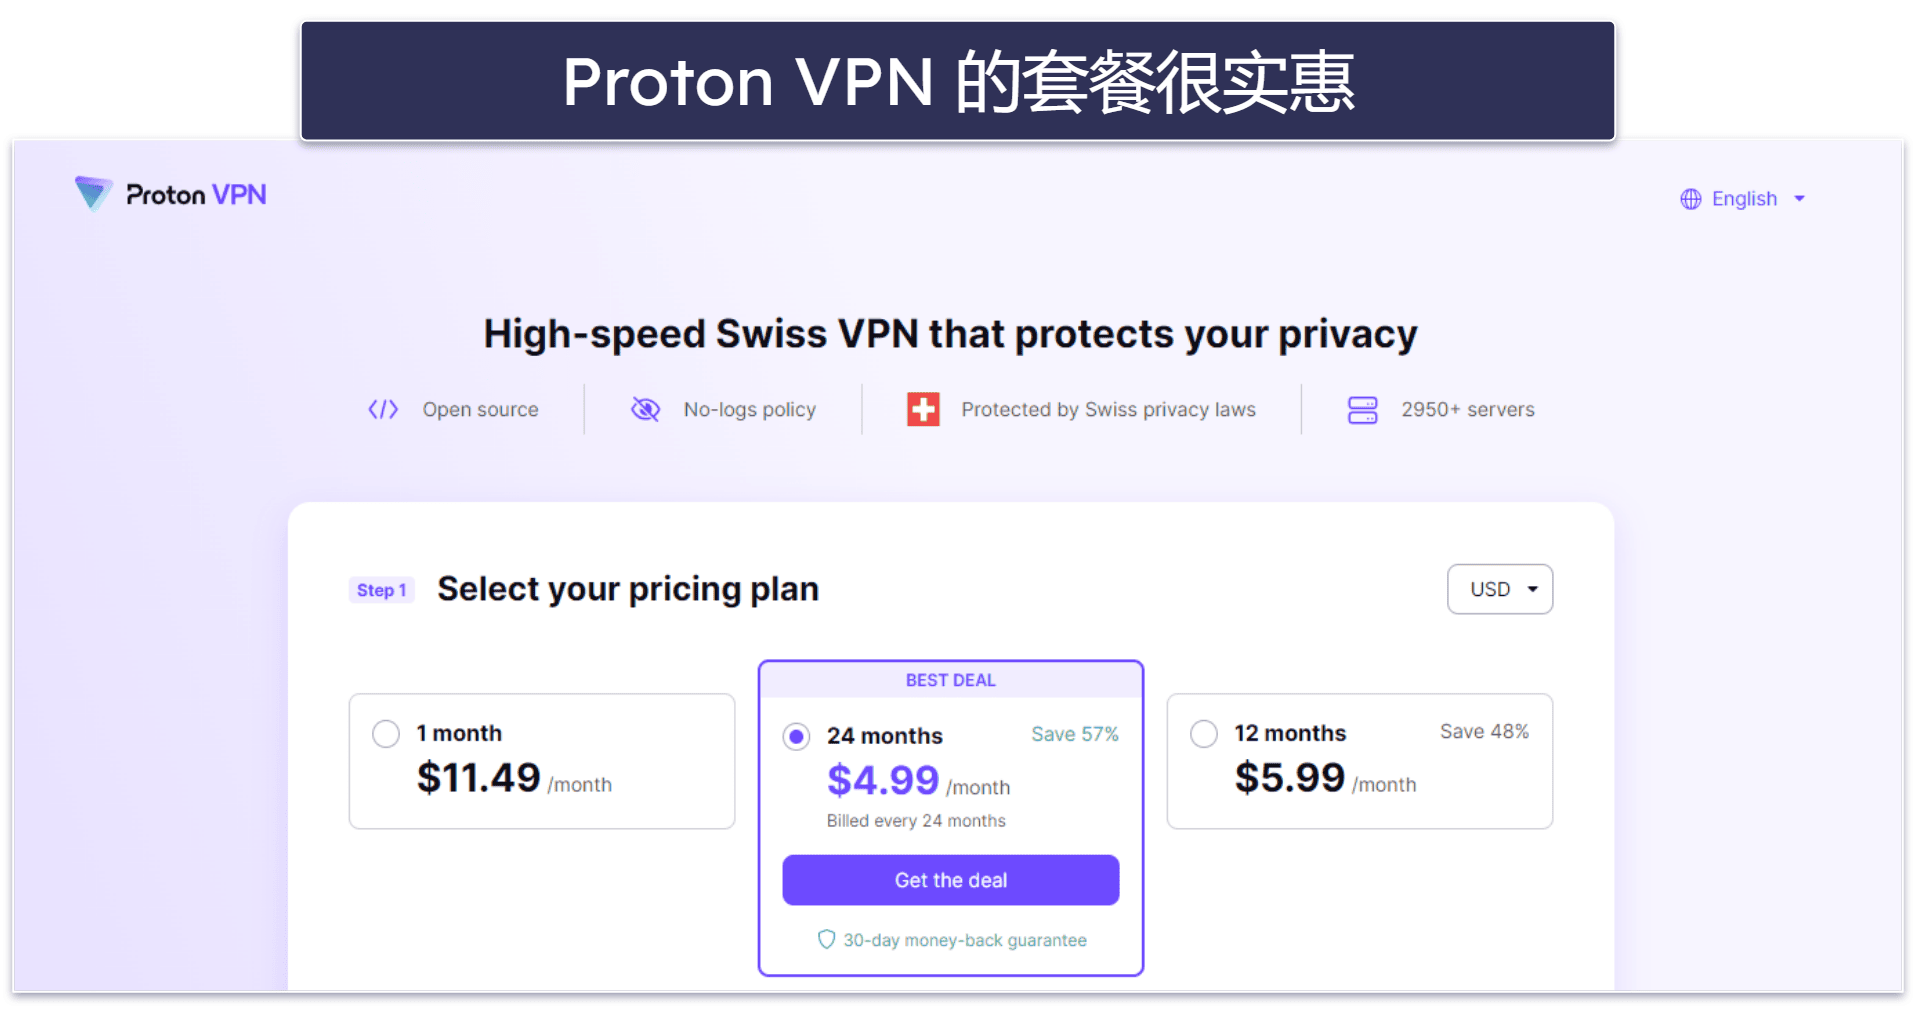 7. Proton VPN: 高级安全和隐私保护功能